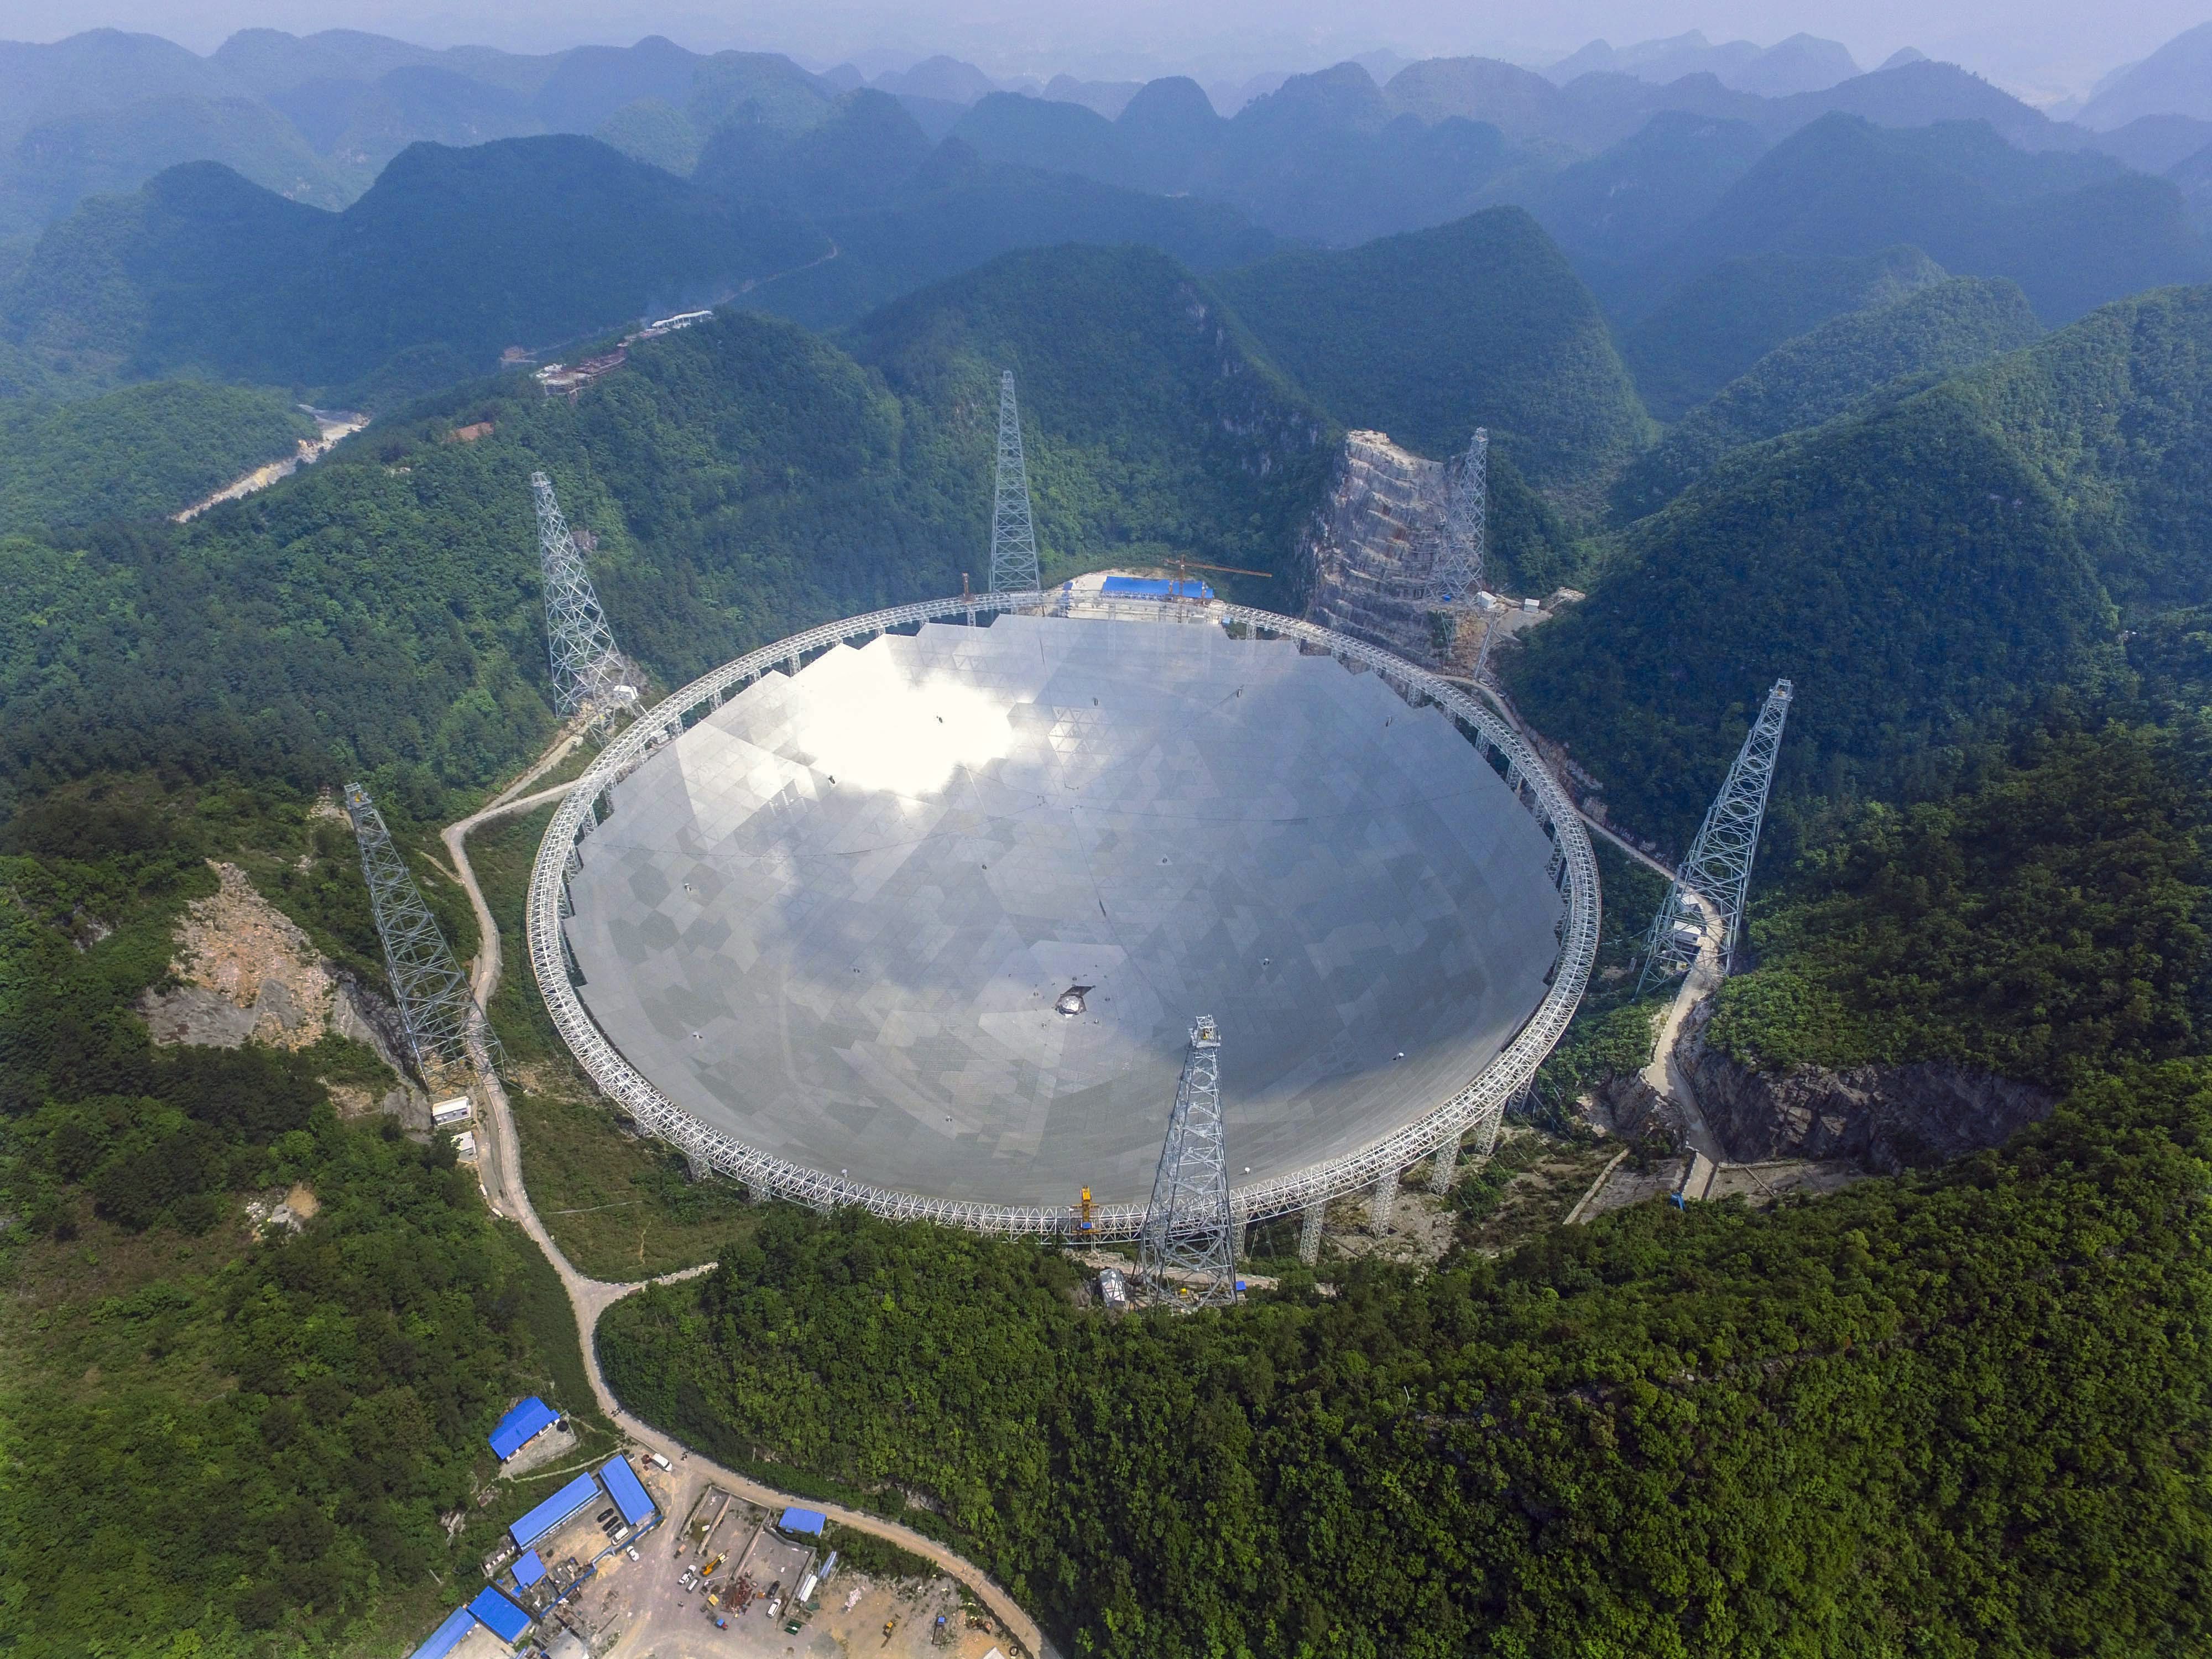 Chiny: otworzono największy radioteleskop na świecie - Wiadomości